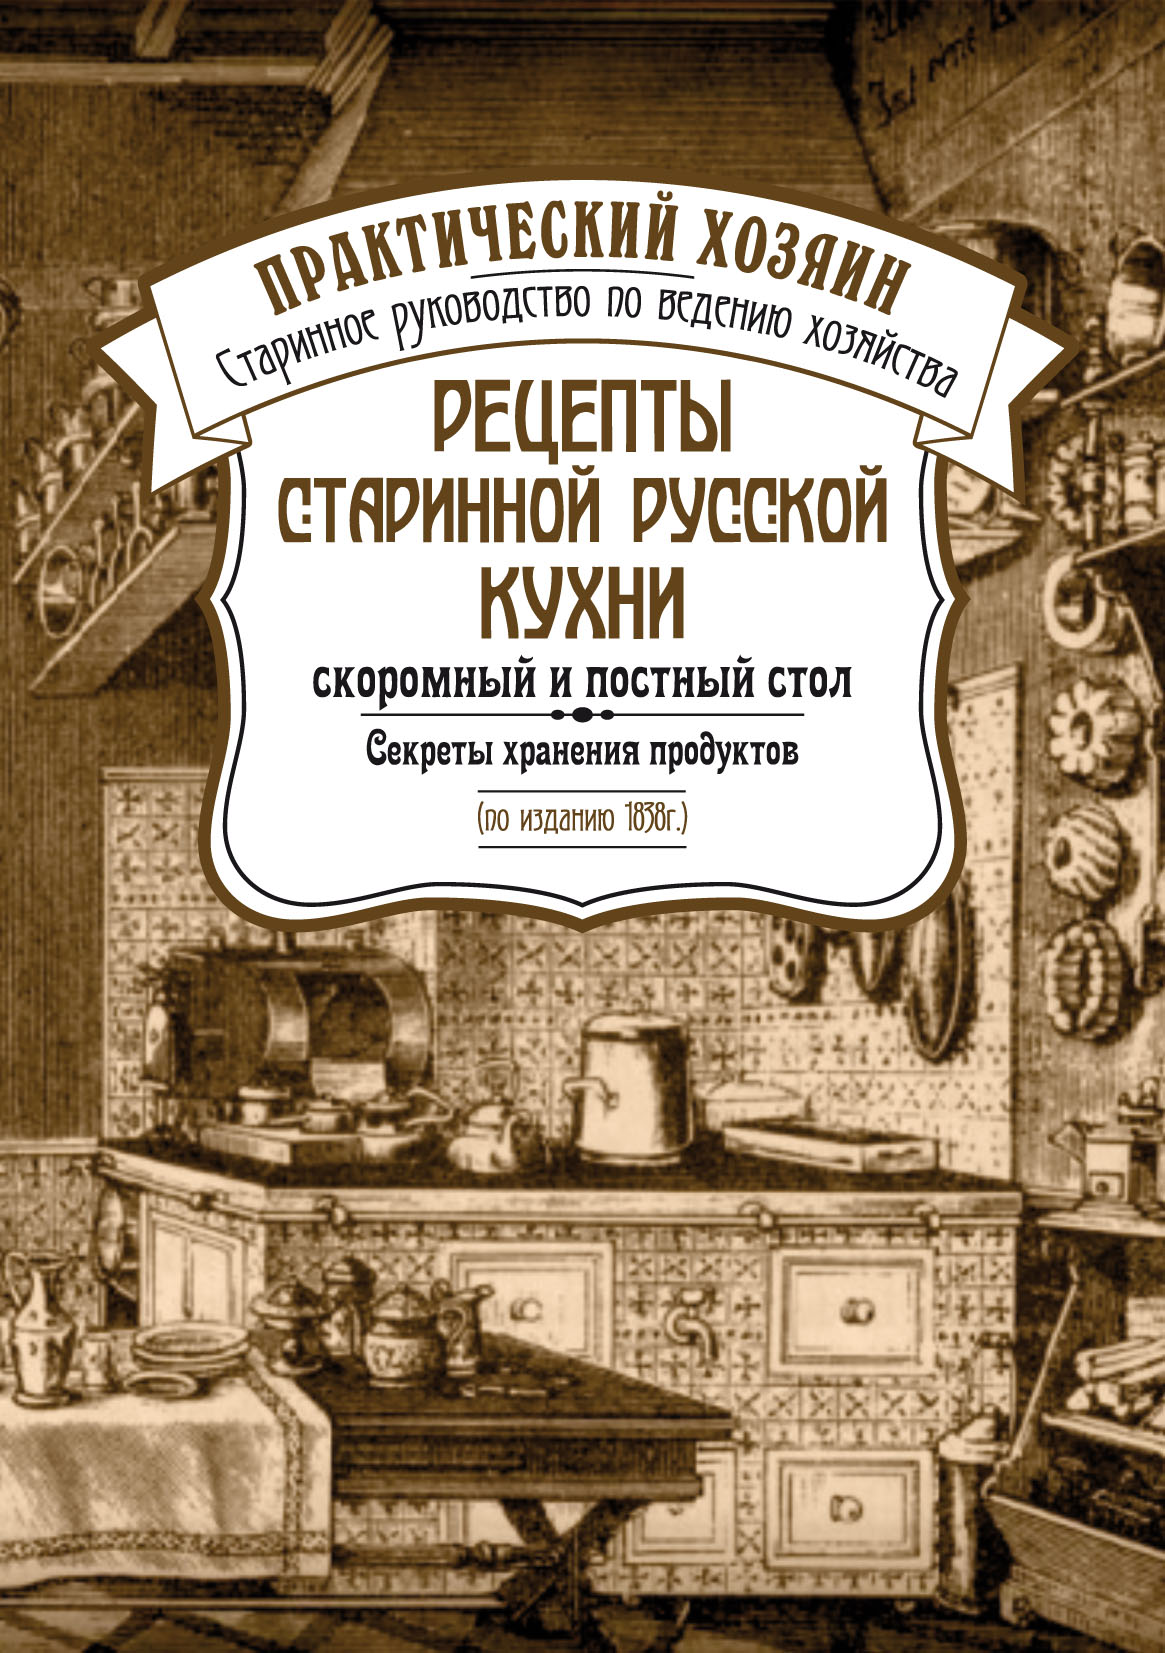 Старинная книга рецептов русской кухни